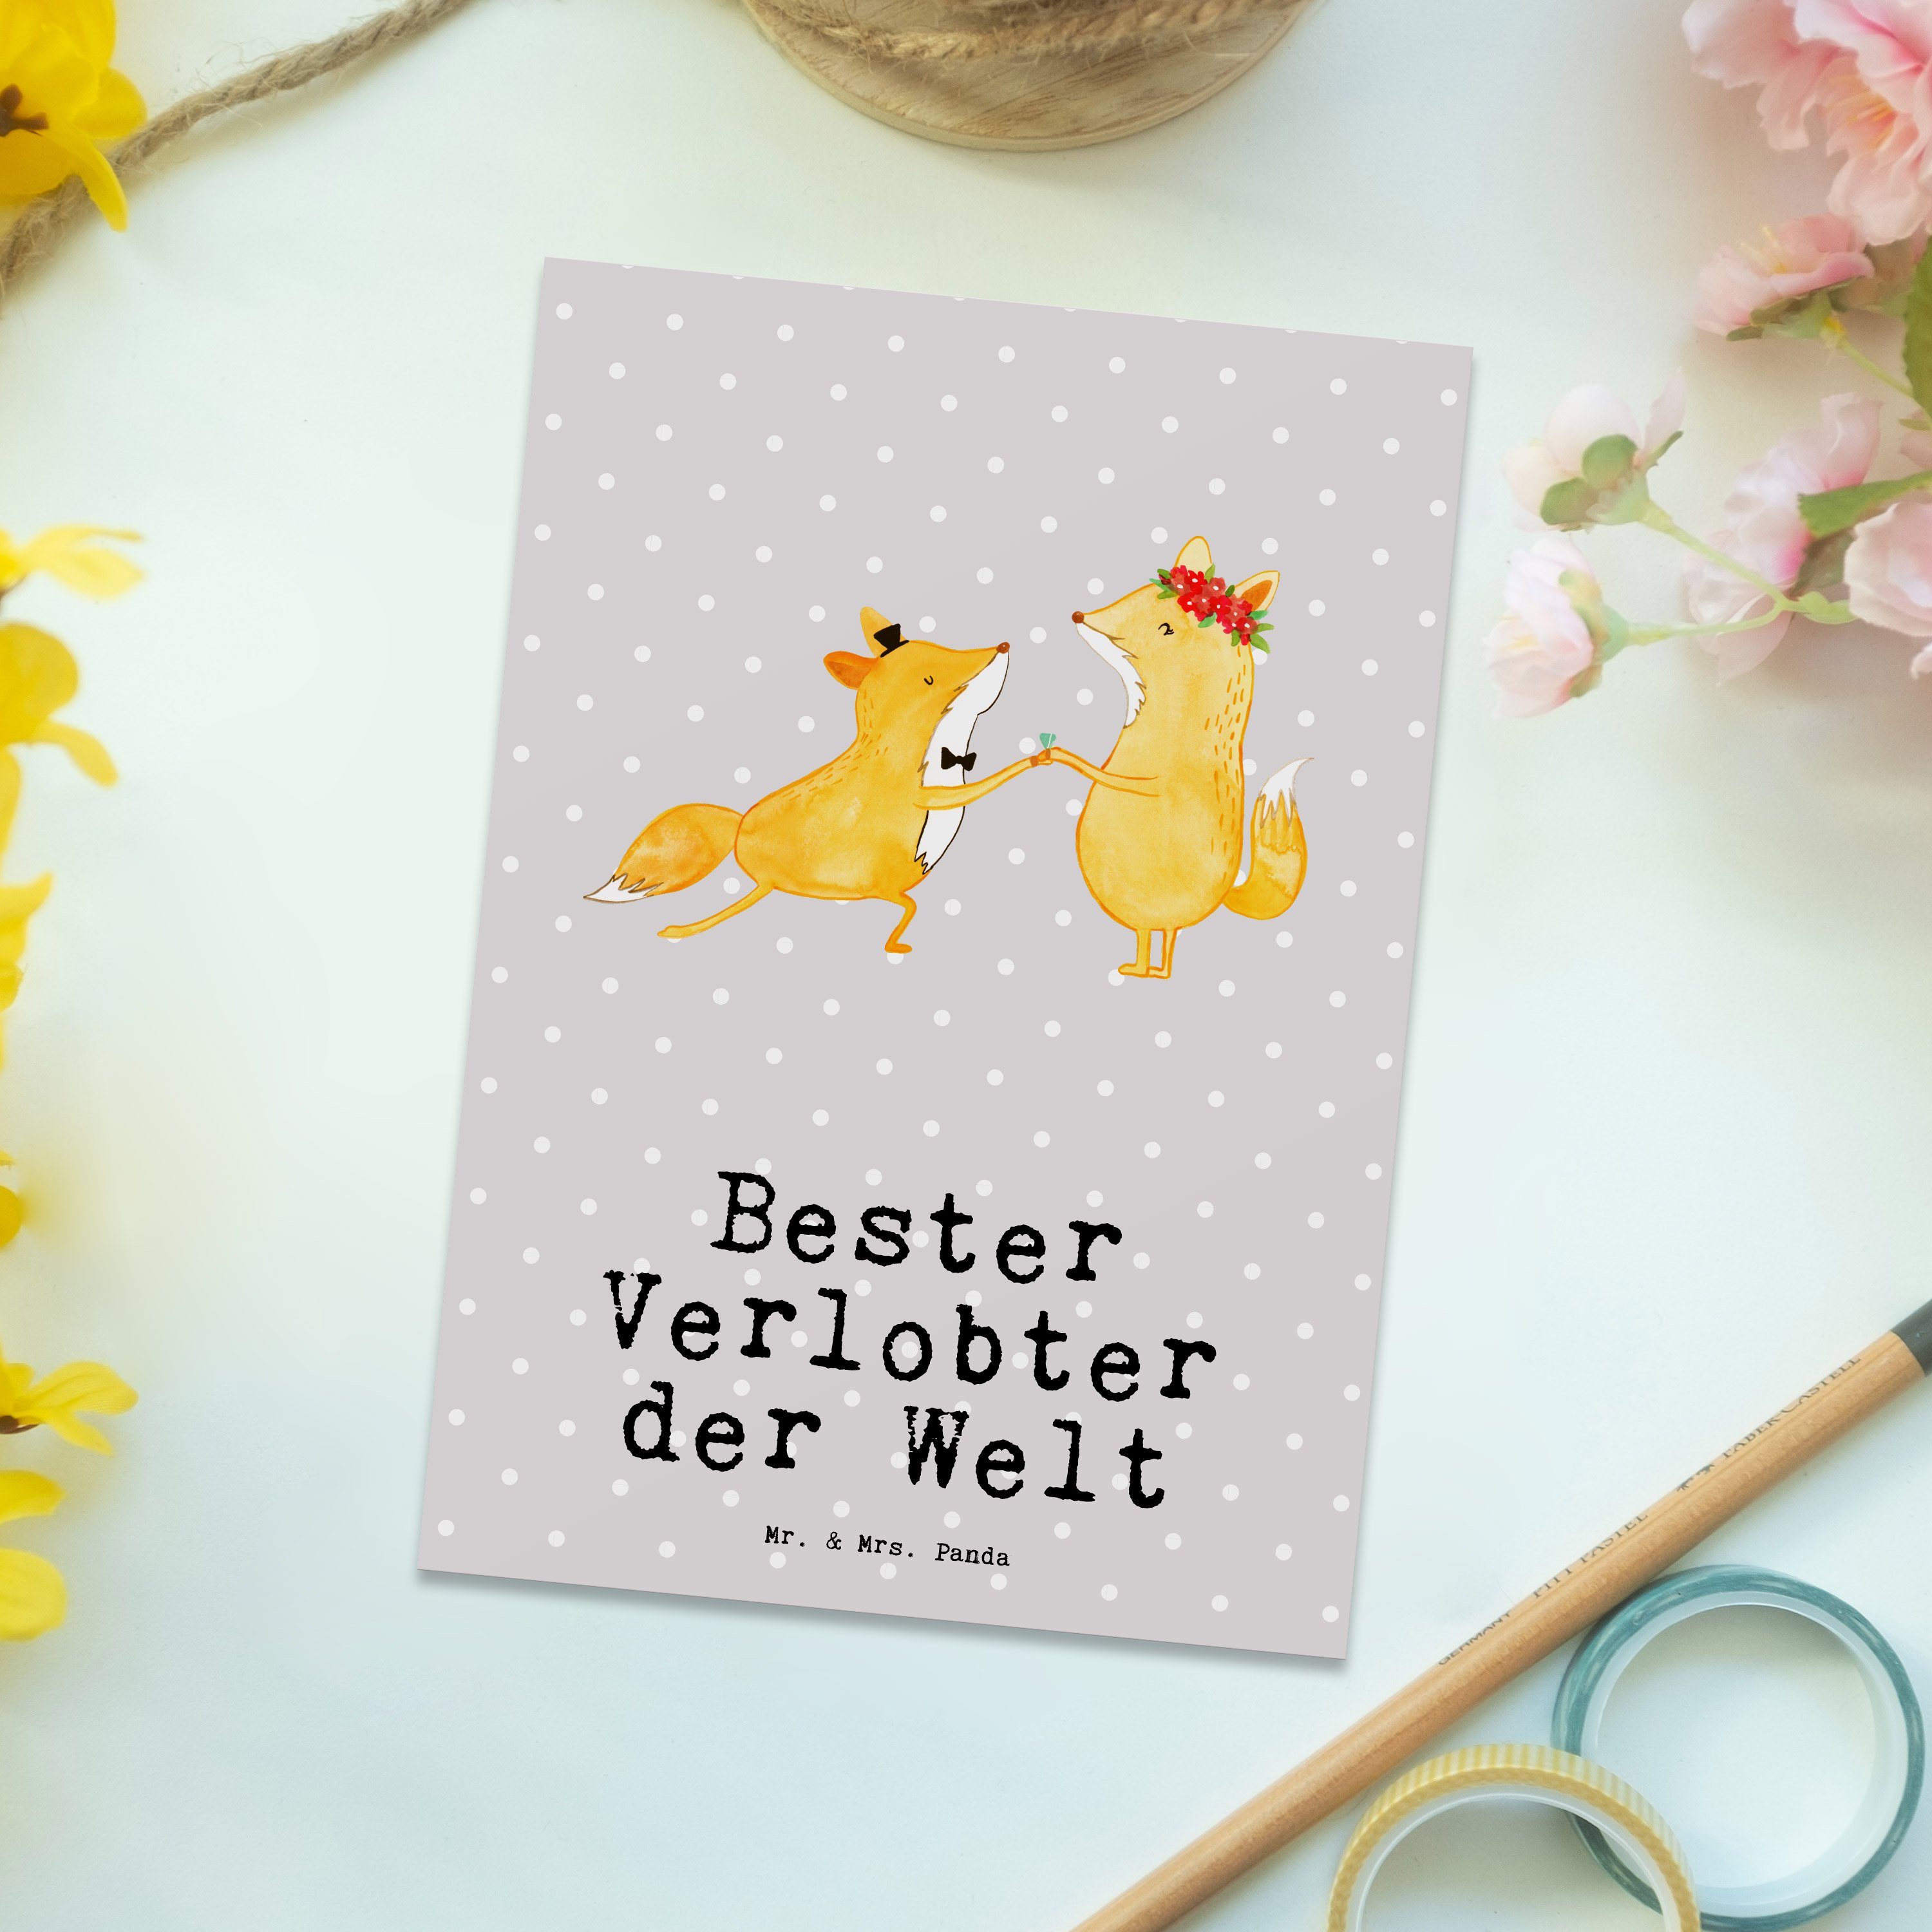 Grau Fuchs Geschenk, Mr. & Pastell - Mrs. - Welt Verlobter Bester der Postkarte Dankeskart Panda